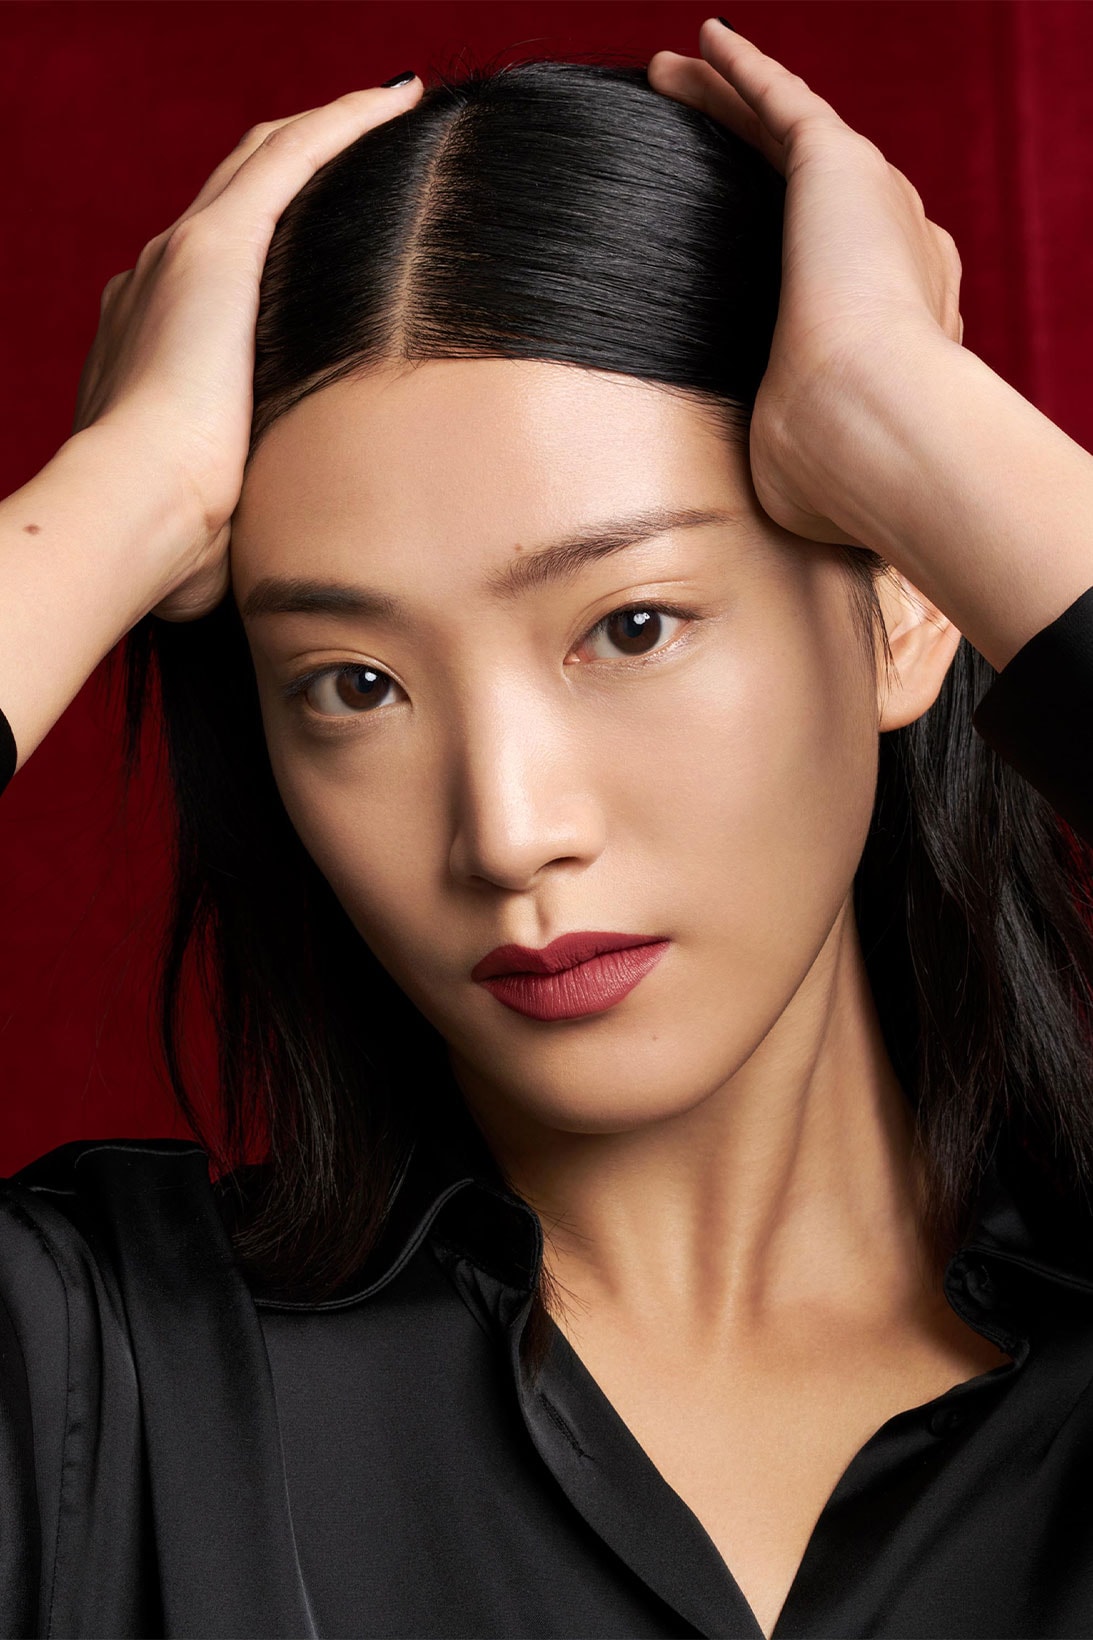 YSL Beauty “The Slim Velvet Radical” model maroon shade